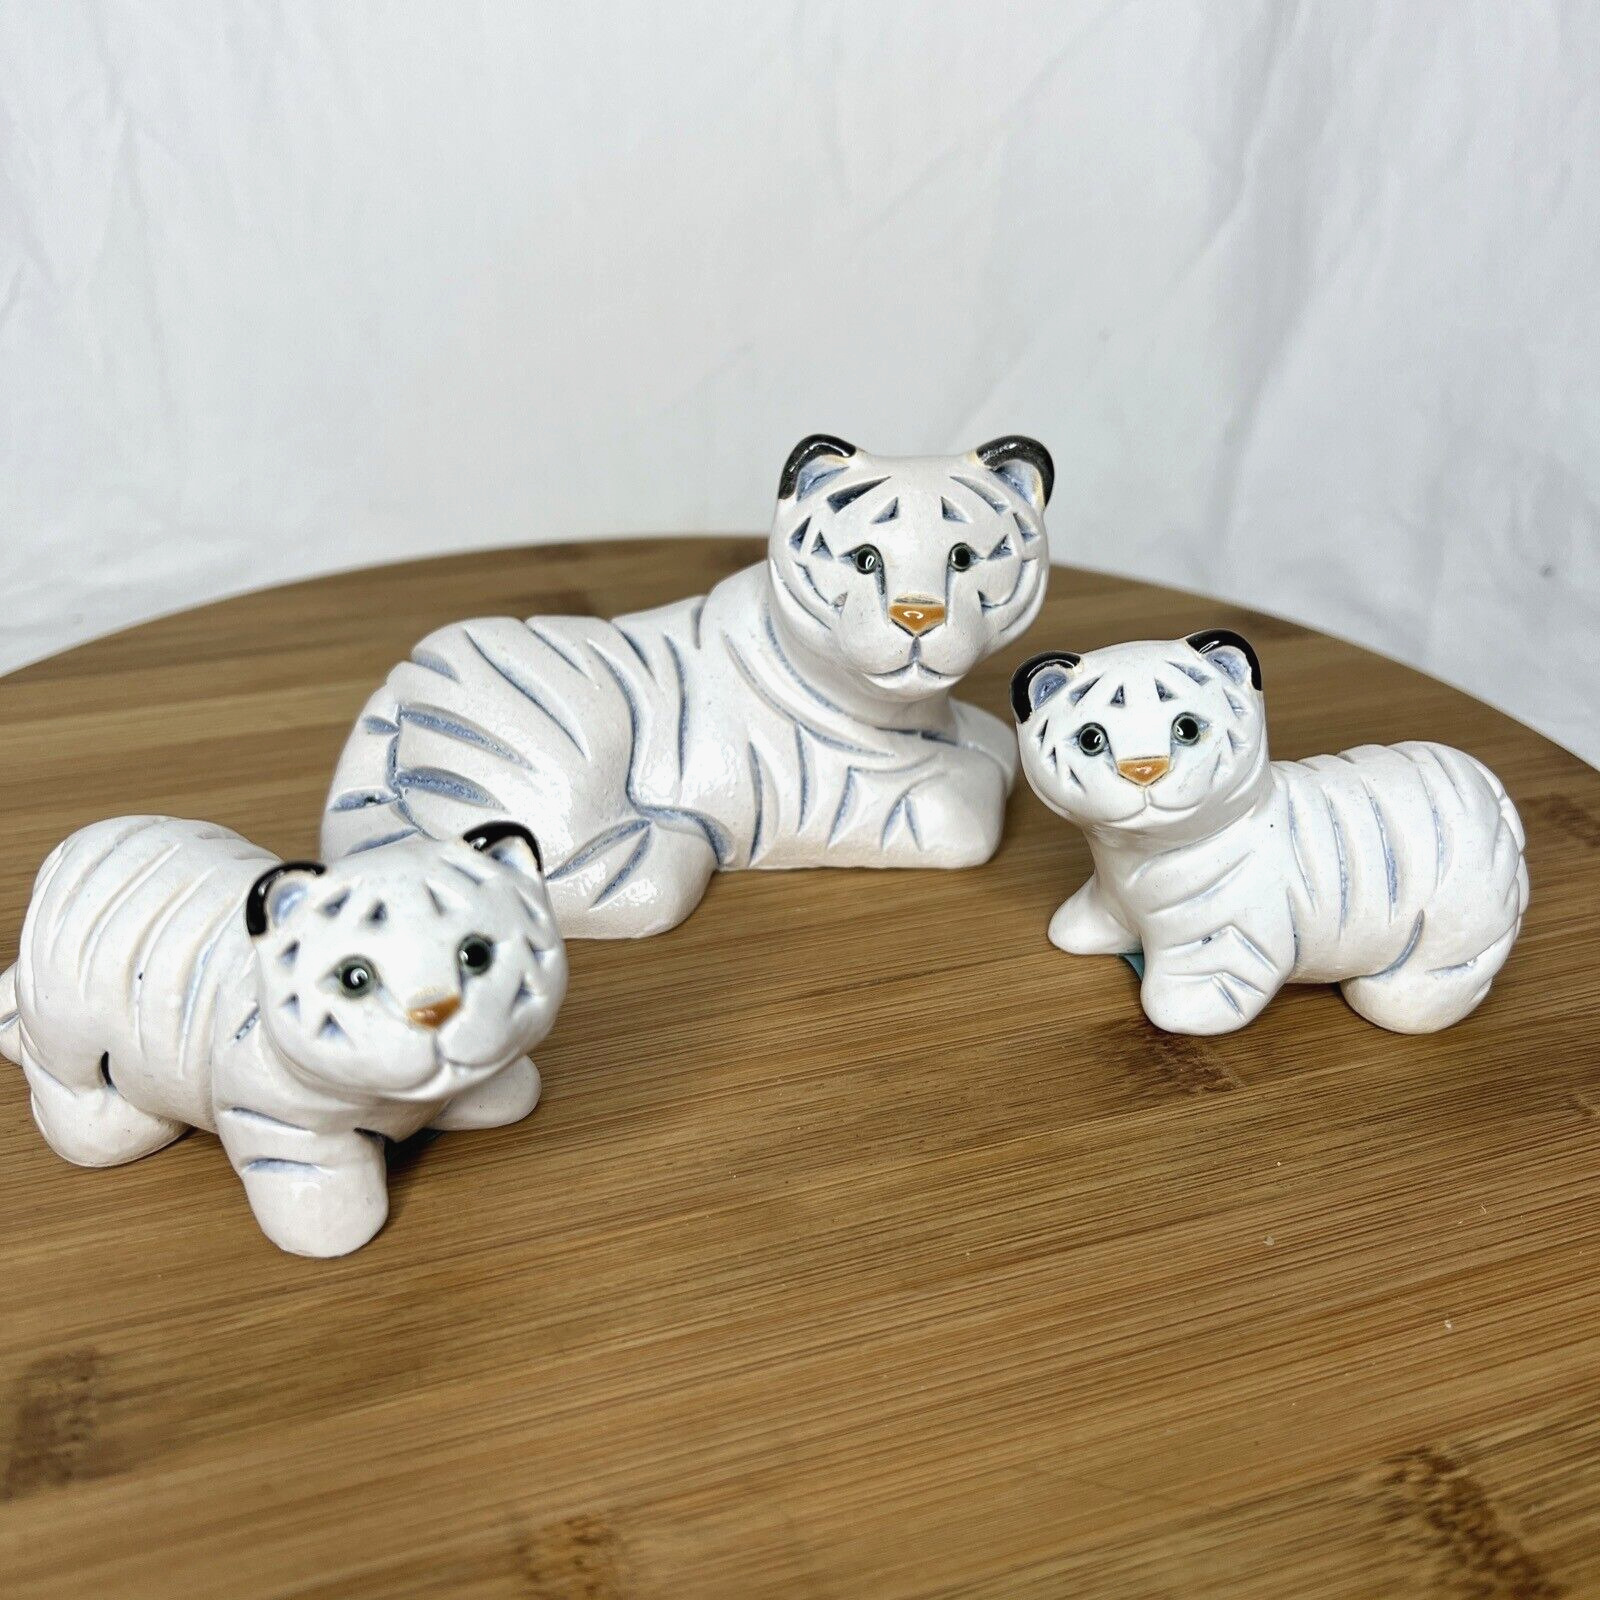 Artesania Rinconada White Tiger with Cubs #344 A344 B344 Original Stickers